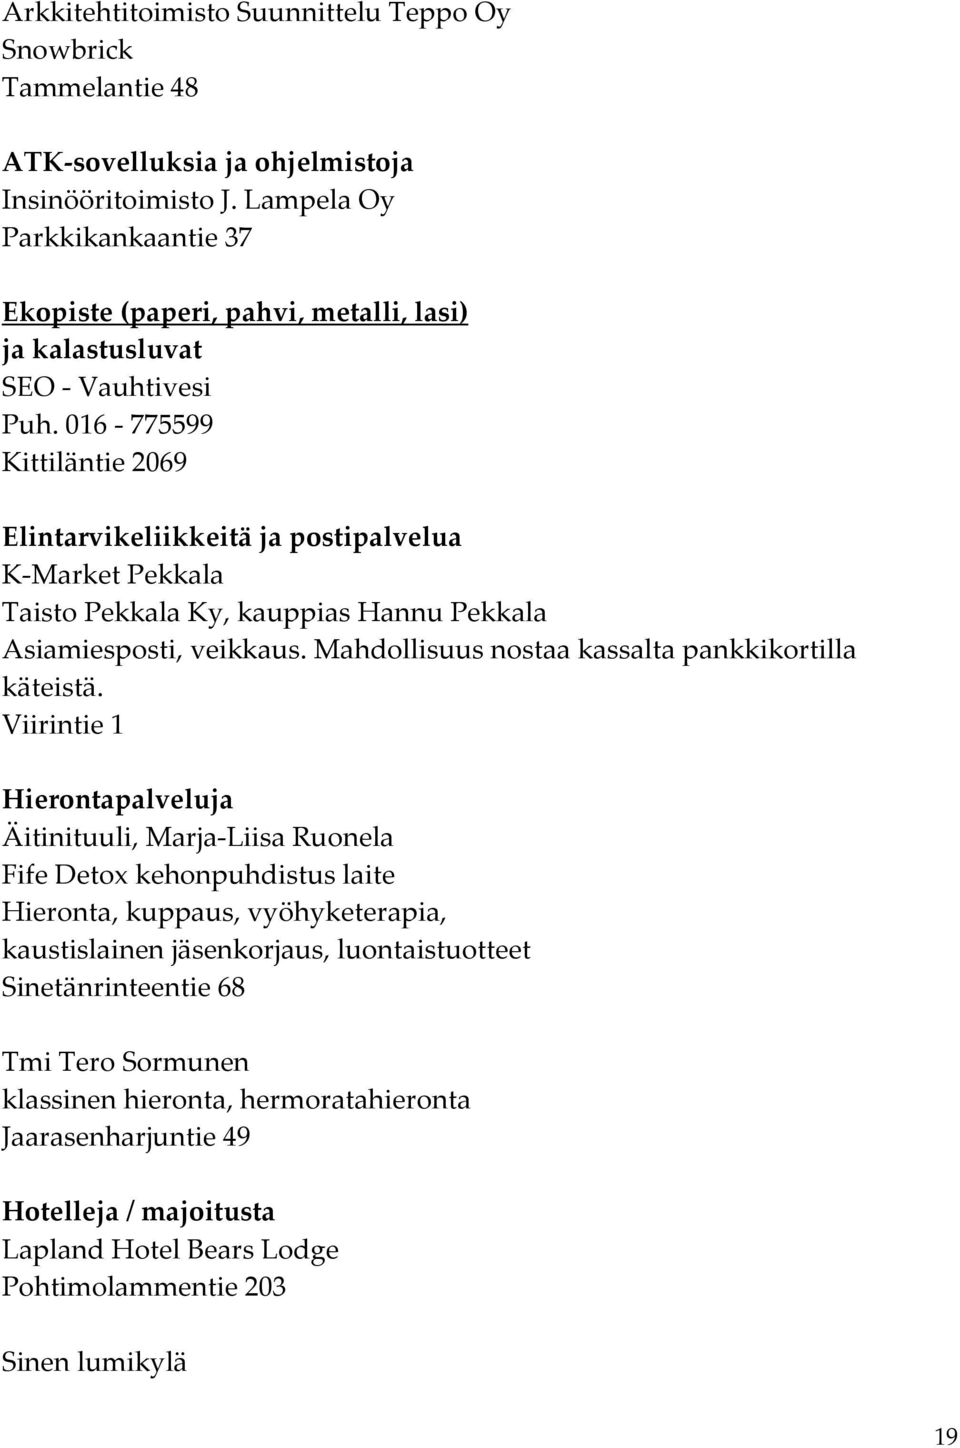 016-775599 Kittiläntie 2069 Elintarvikeliikkeitä ja postipalvelua K-Market Pekkala Taisto Pekkala Ky, kauppias Hannu Pekkala Asiamiesposti, veikkaus.